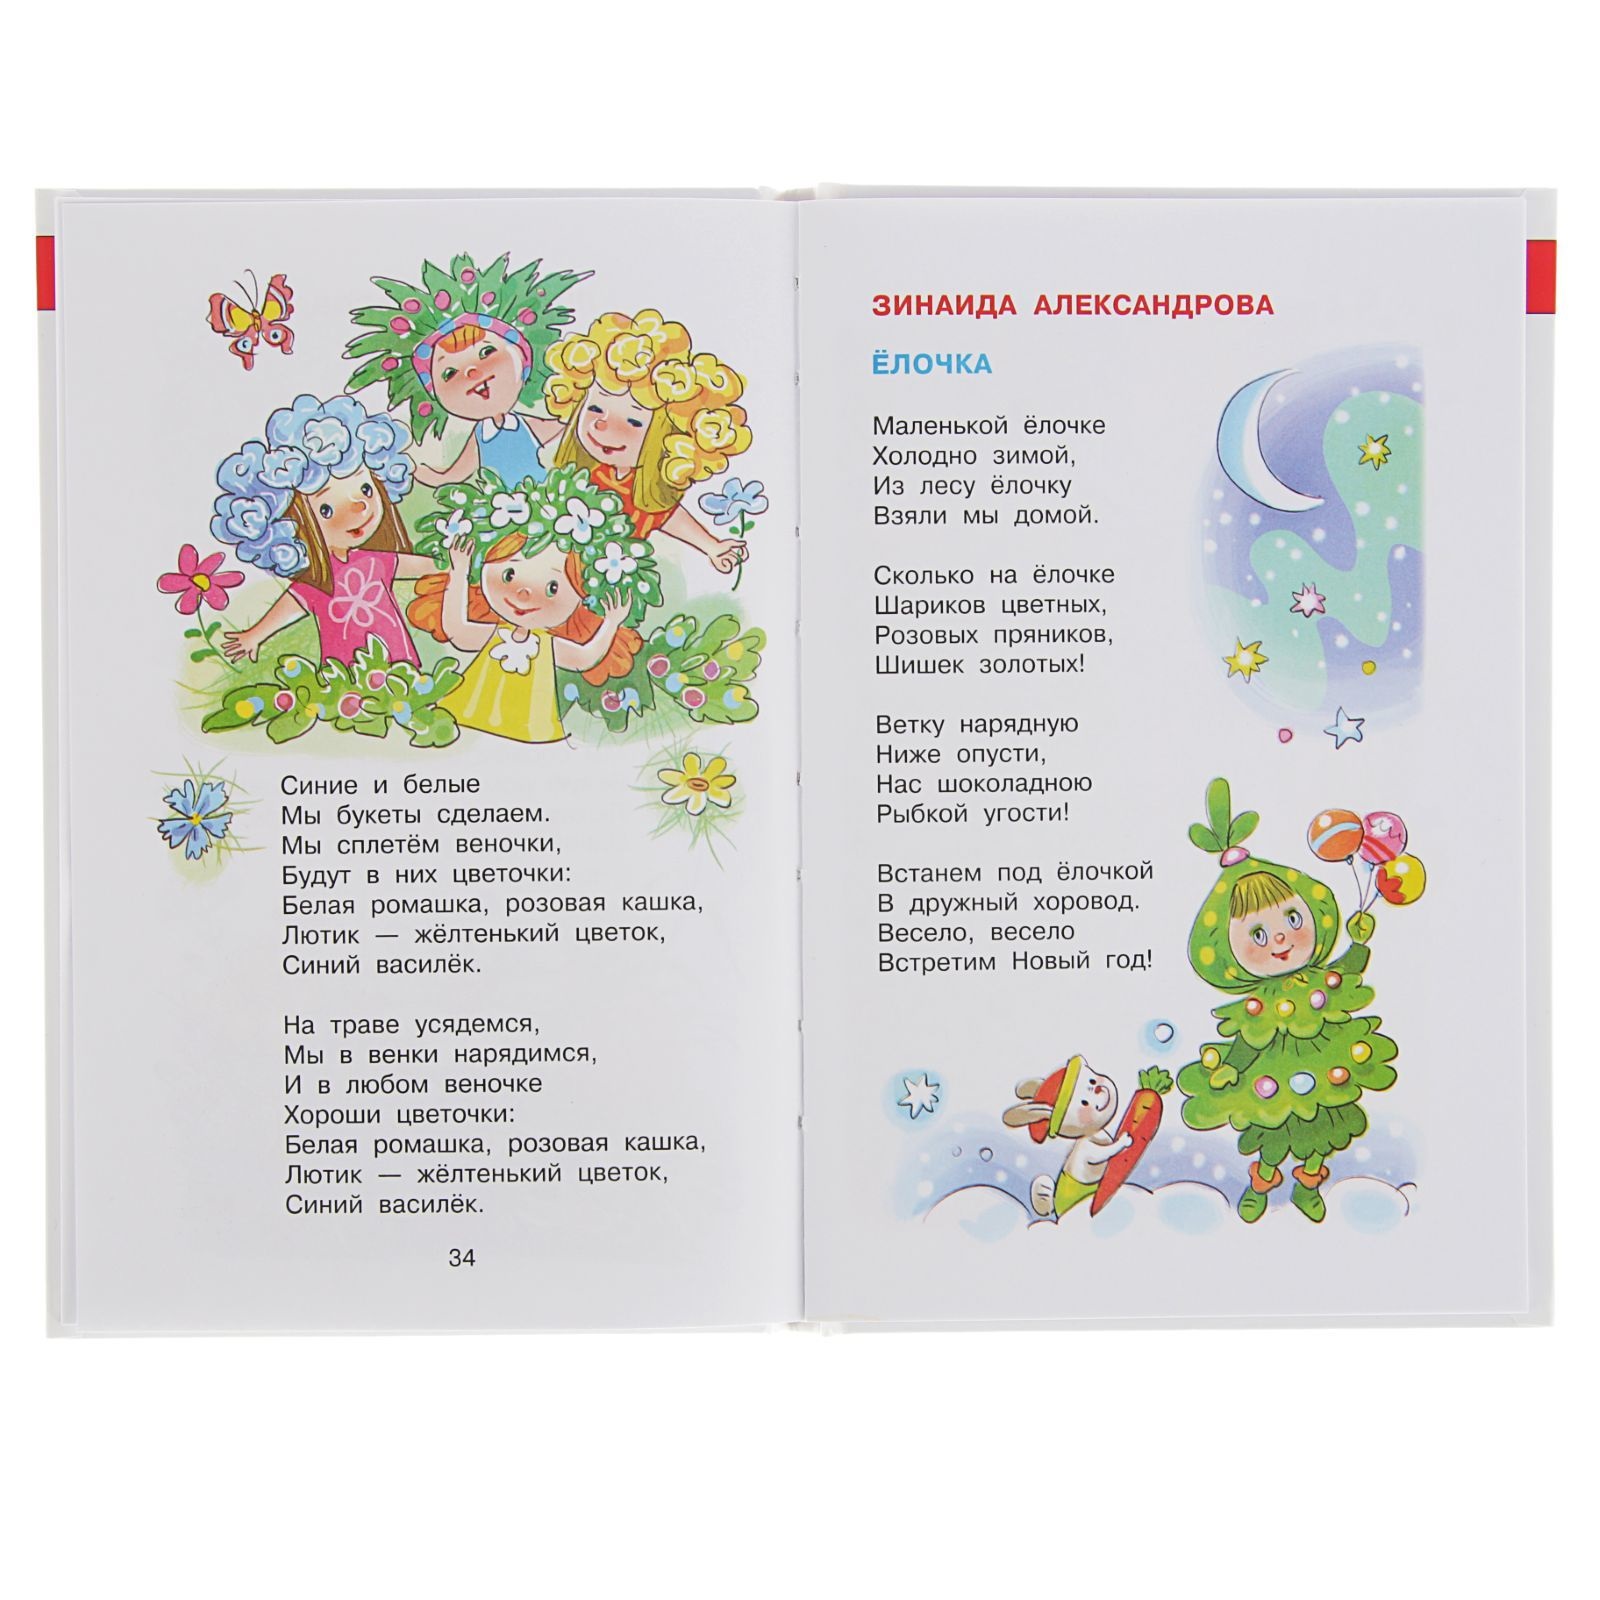 Детские современные песни для детей: Мария Першина - Смешной медведь